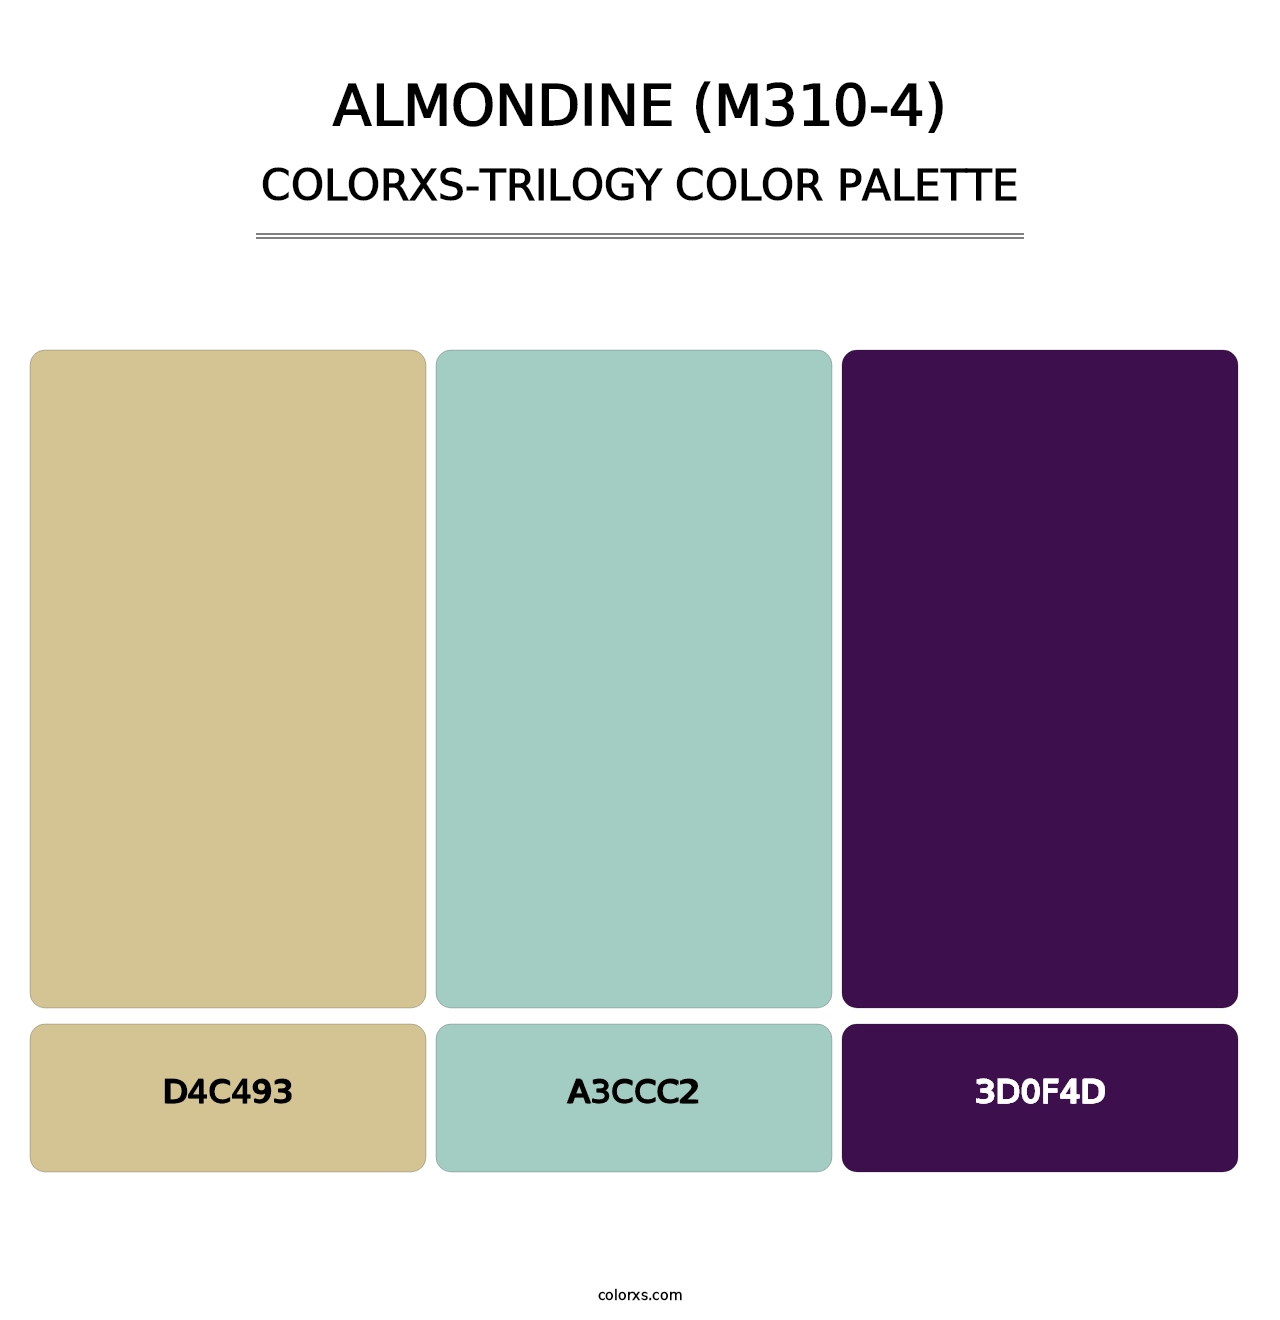 Almondine (M310-4) - Colorxs Trilogy Palette